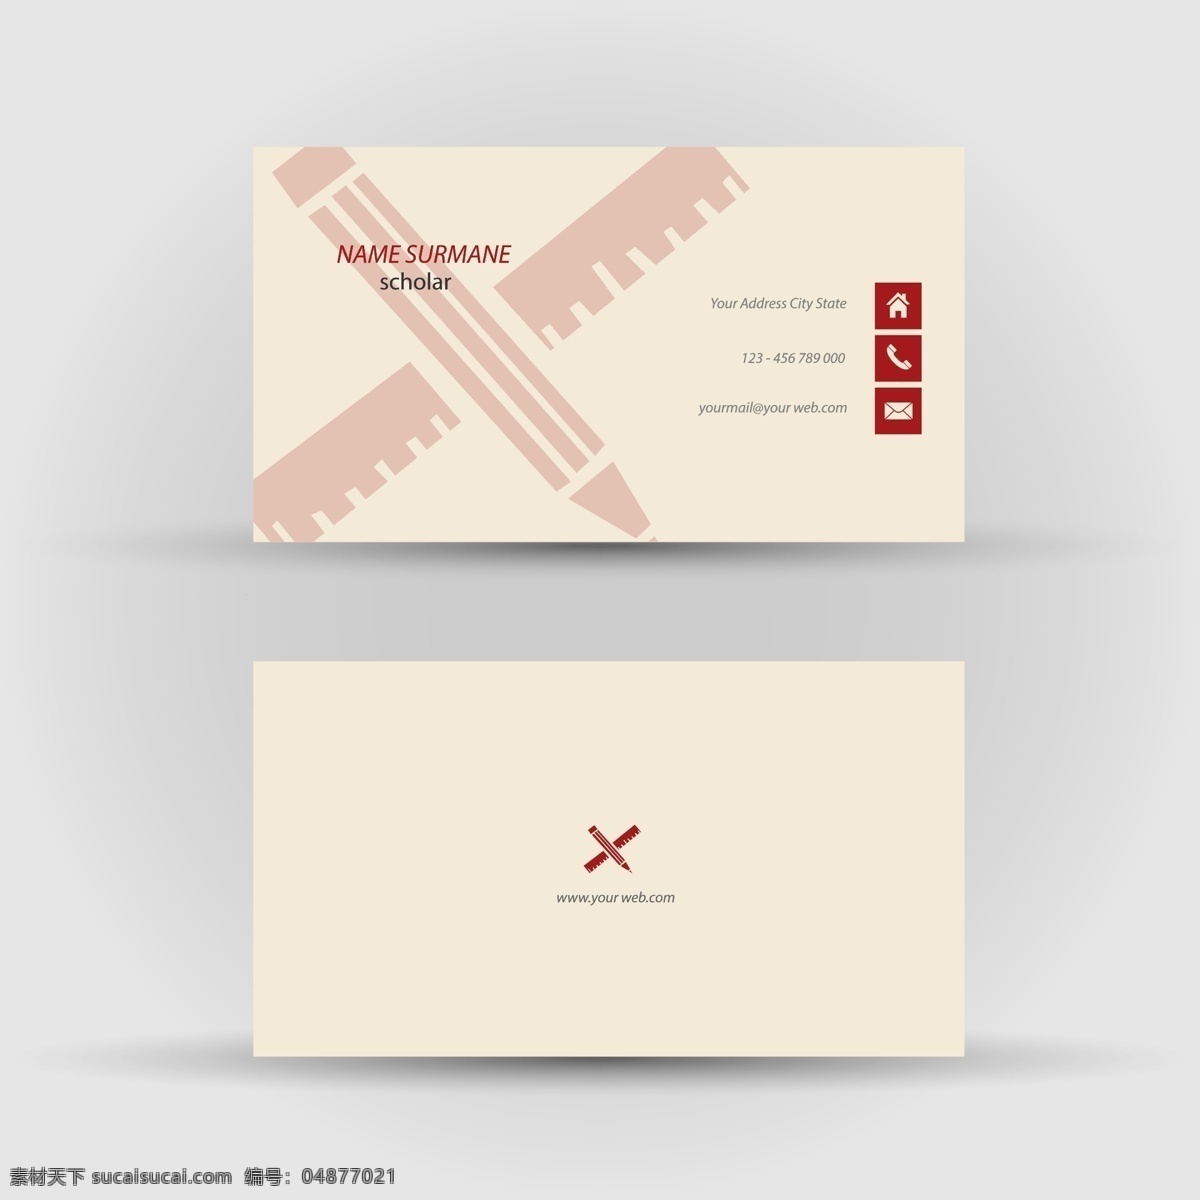 红色 铅笔 名片设计 模板下载 名片 卡片 商务名片 名片卡片 矢量素材 白色